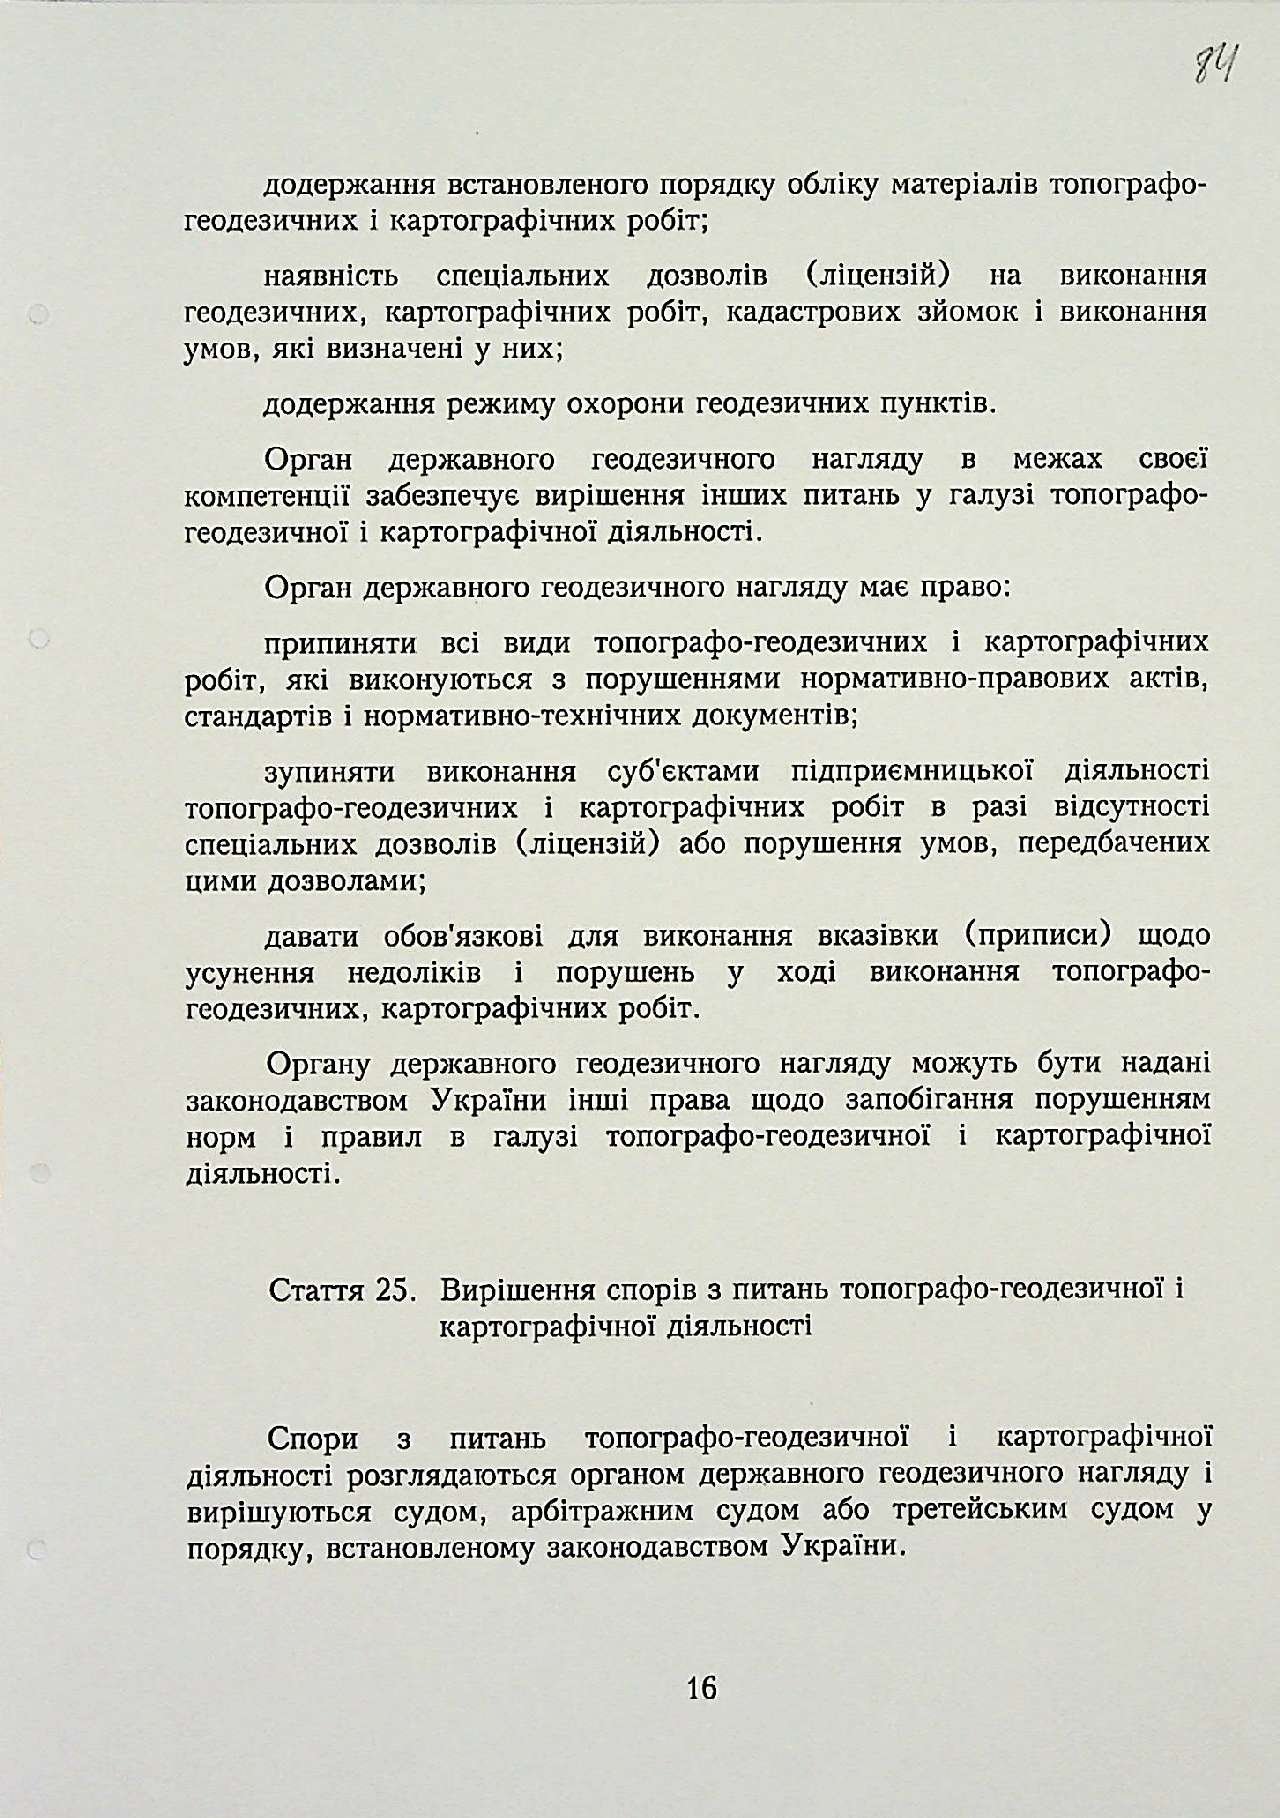 Закон України від 23 грудня 1998 р. № 353-ХІV «Про топографо-геодезичну і картографічну діяльність».